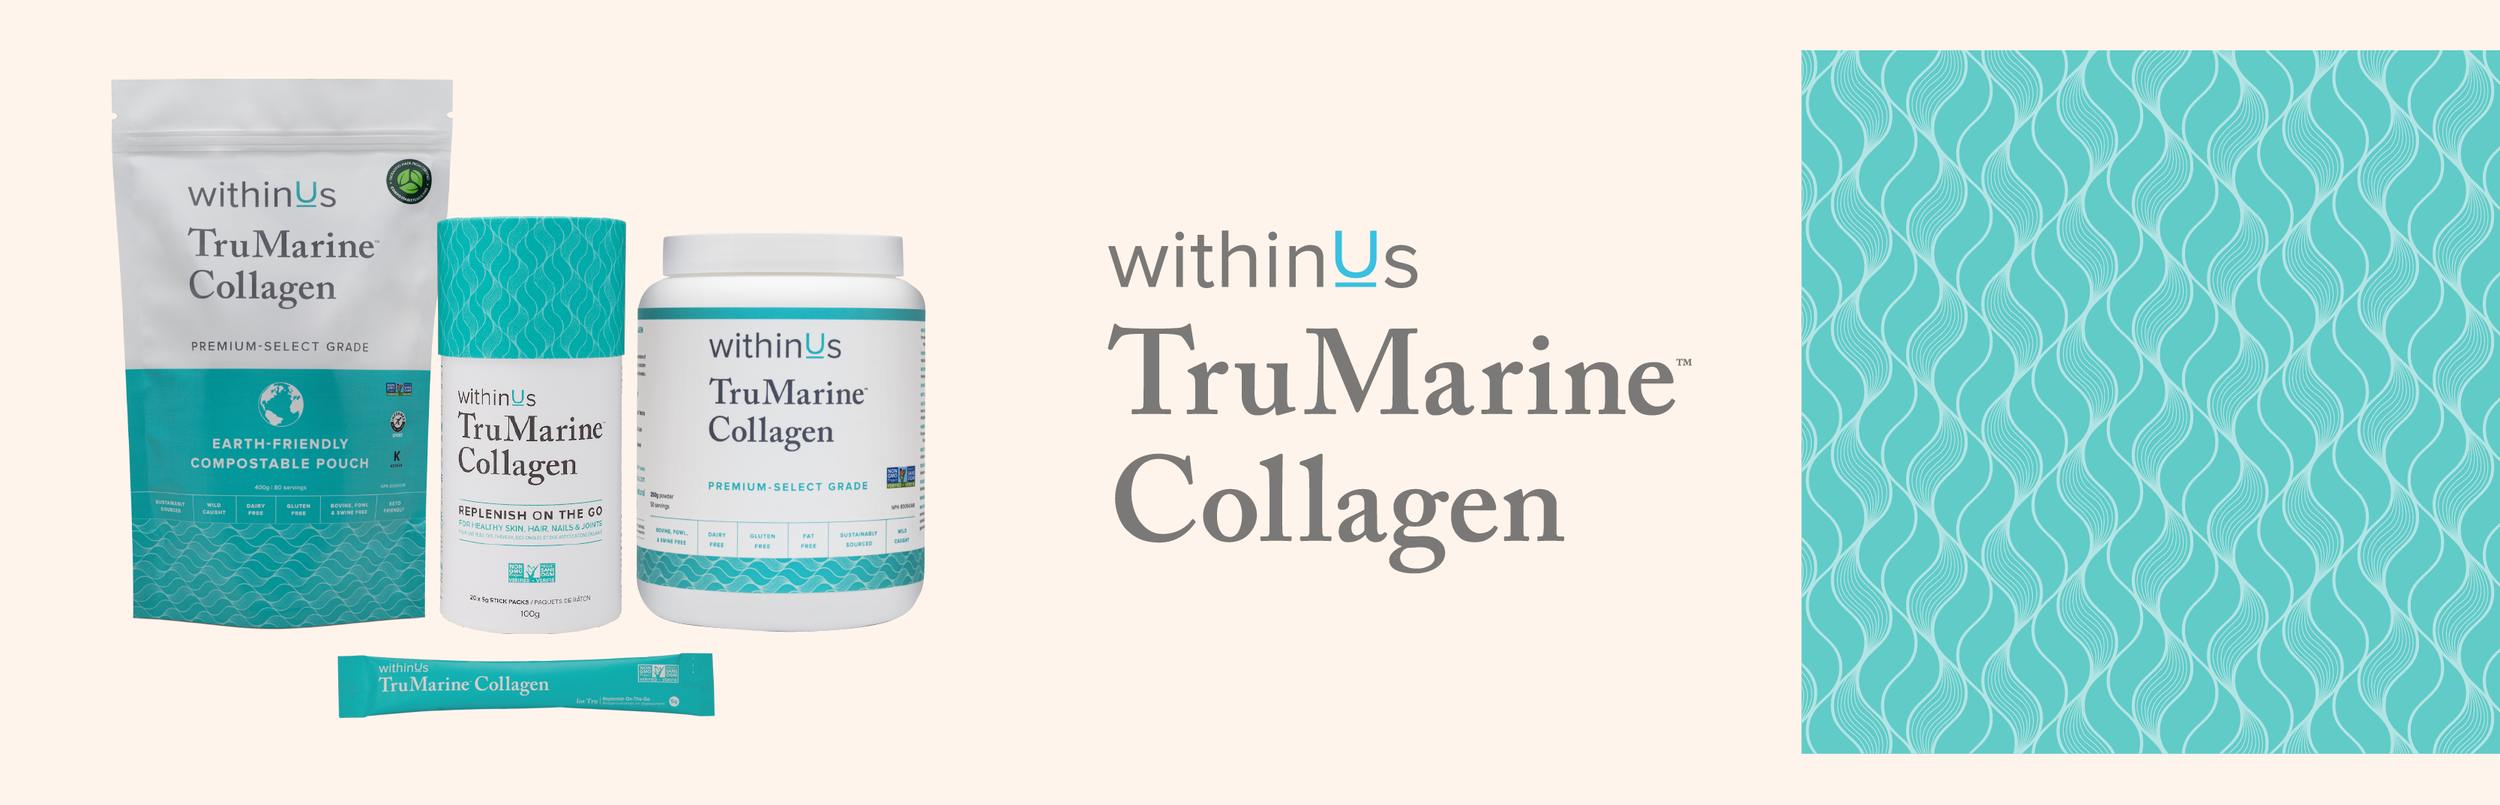 withinUs-Product-Design_TruMarine_Collagen.png